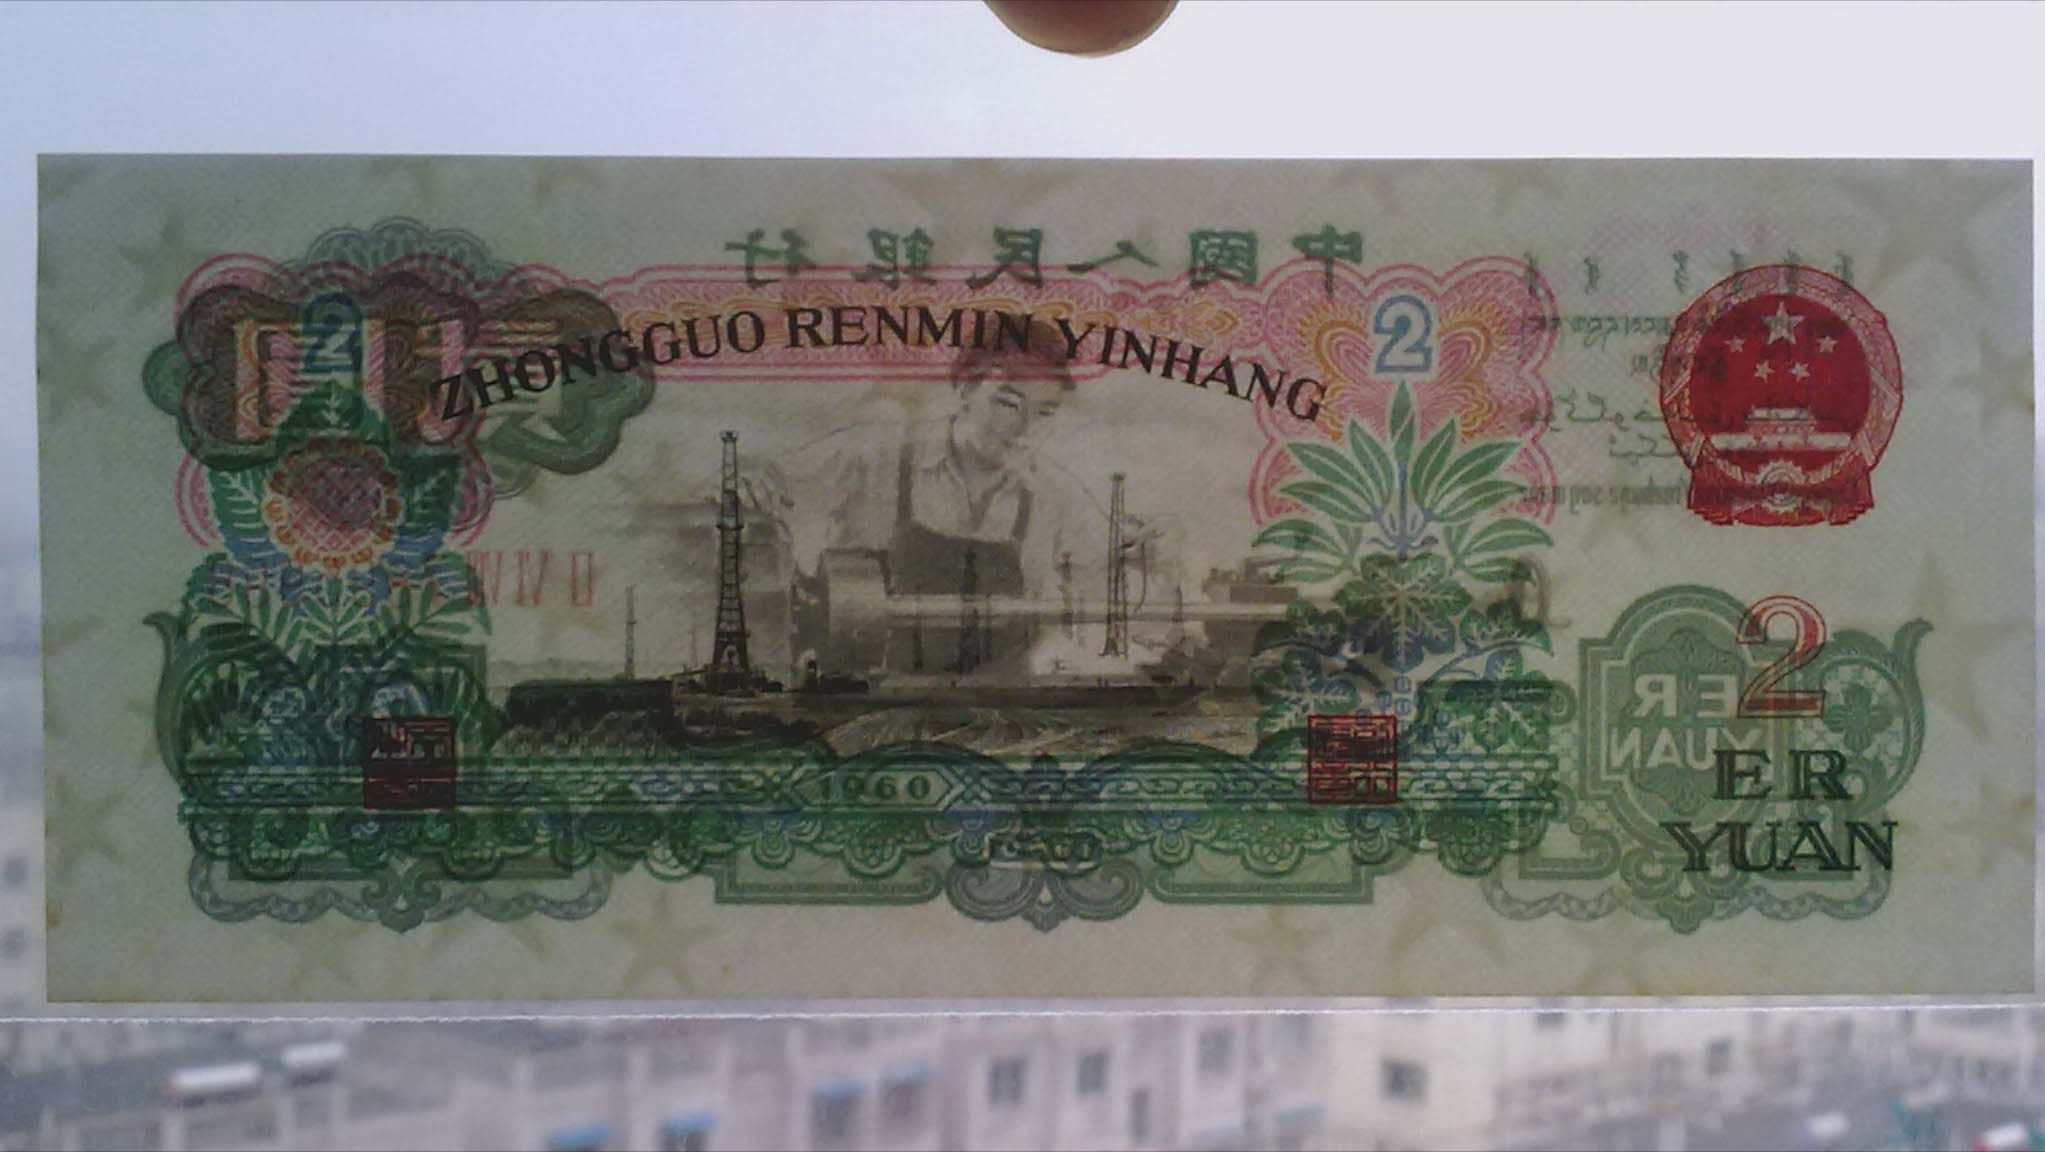 绿色纸币的代表性品种,车工2元,现在多少钱一张?